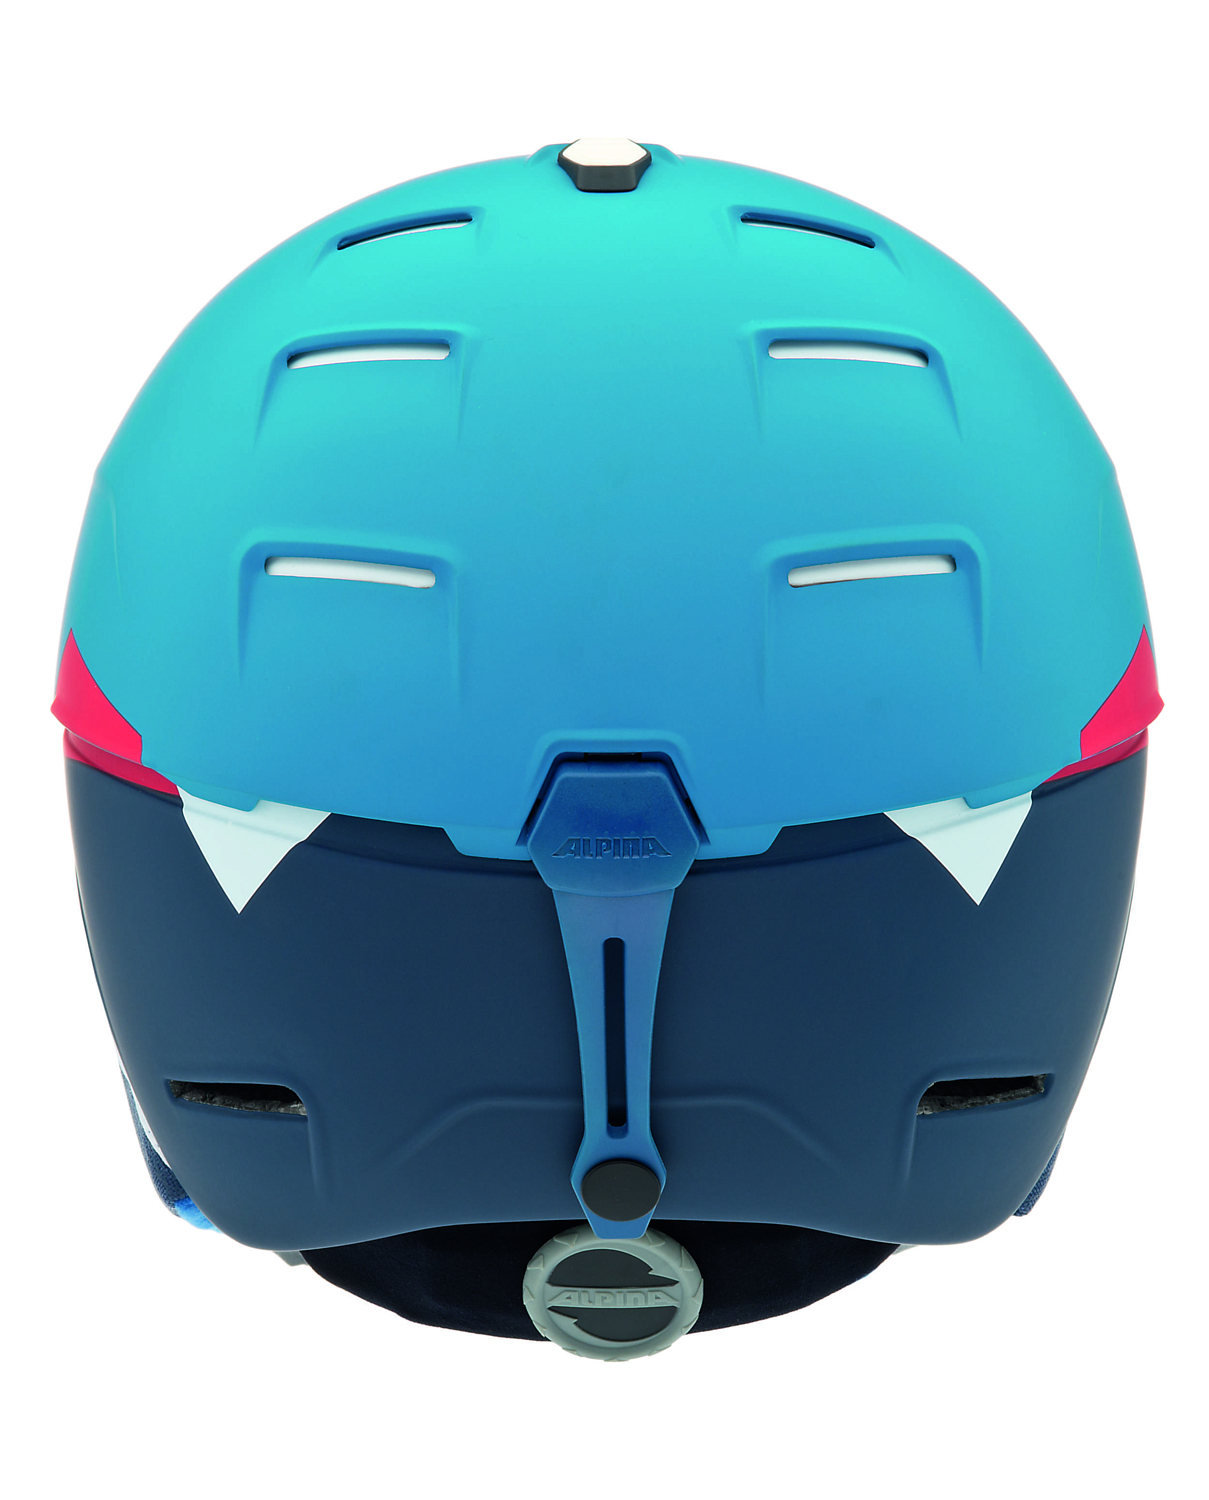 Зимний Шлем Alpina CHEOS blue-red matt